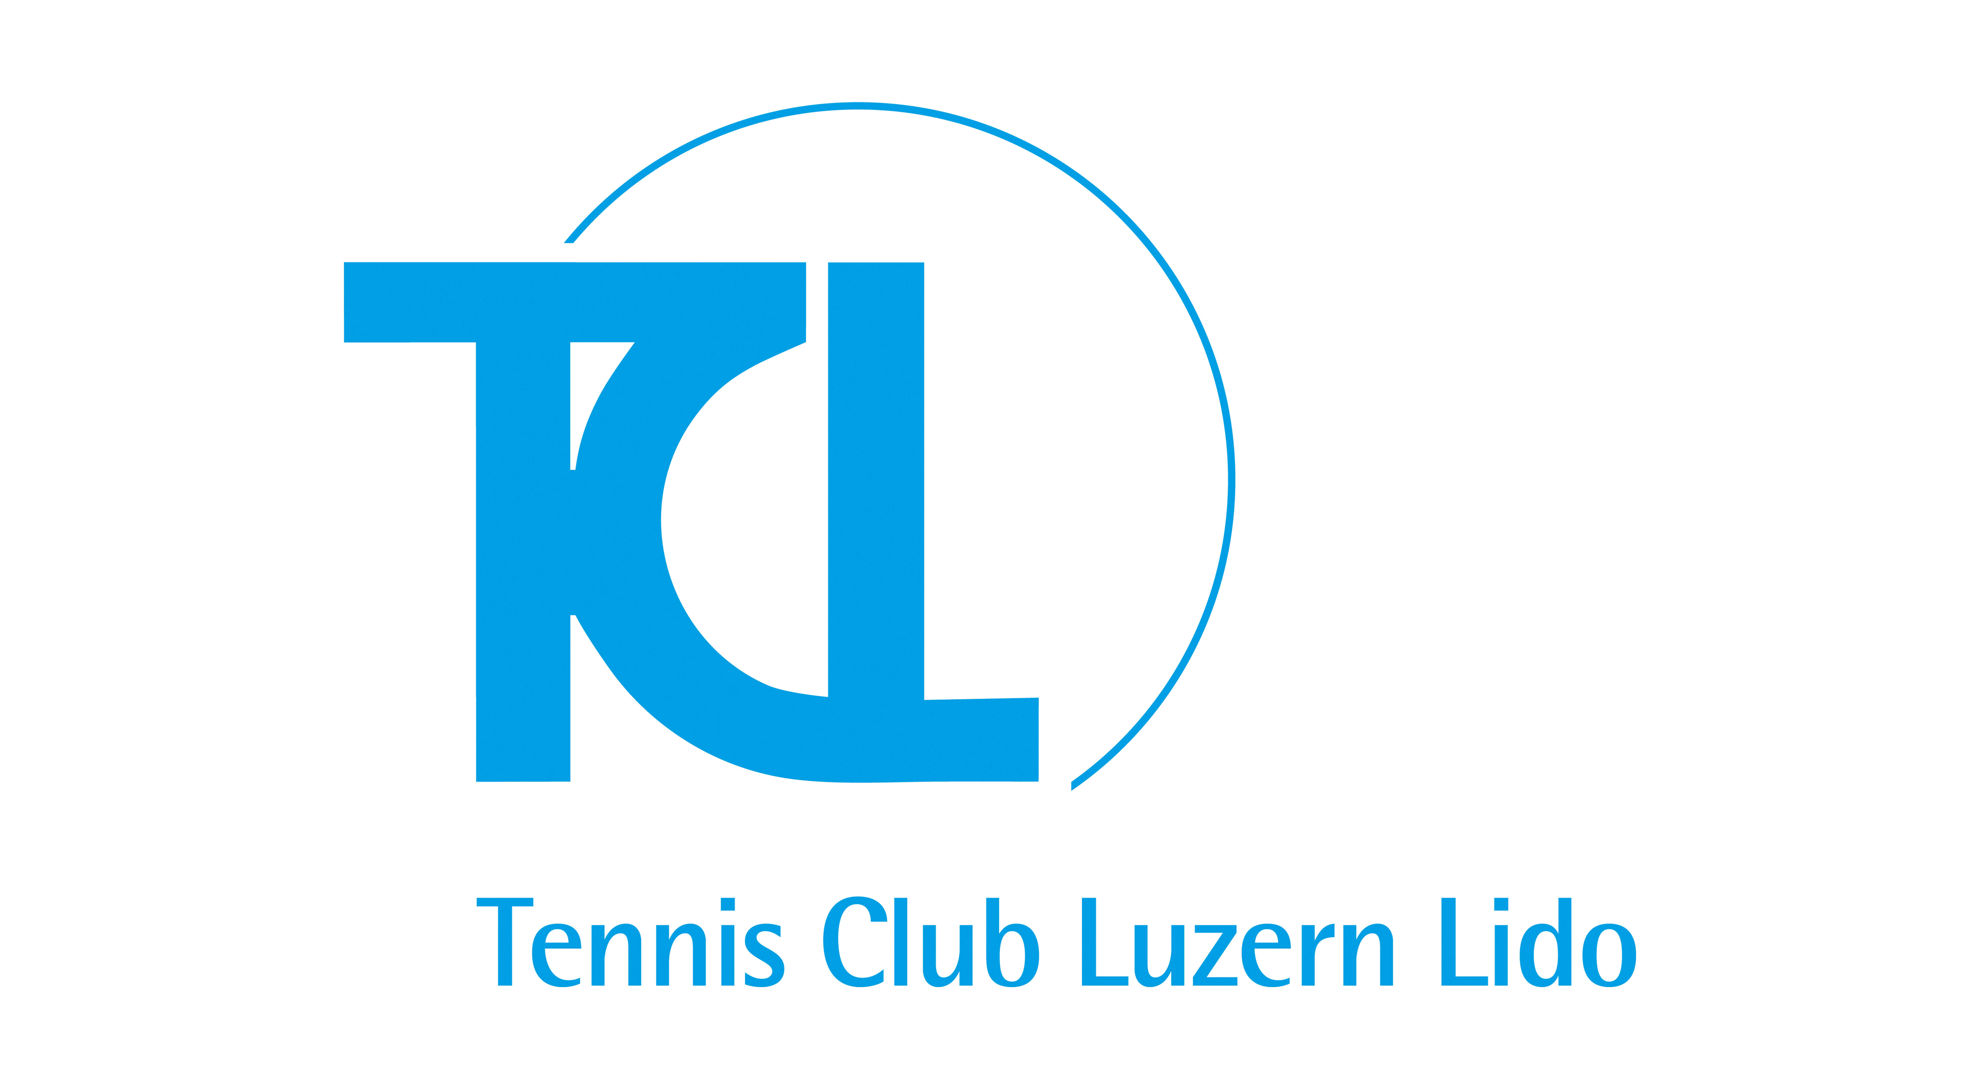 TC Lido Luzern